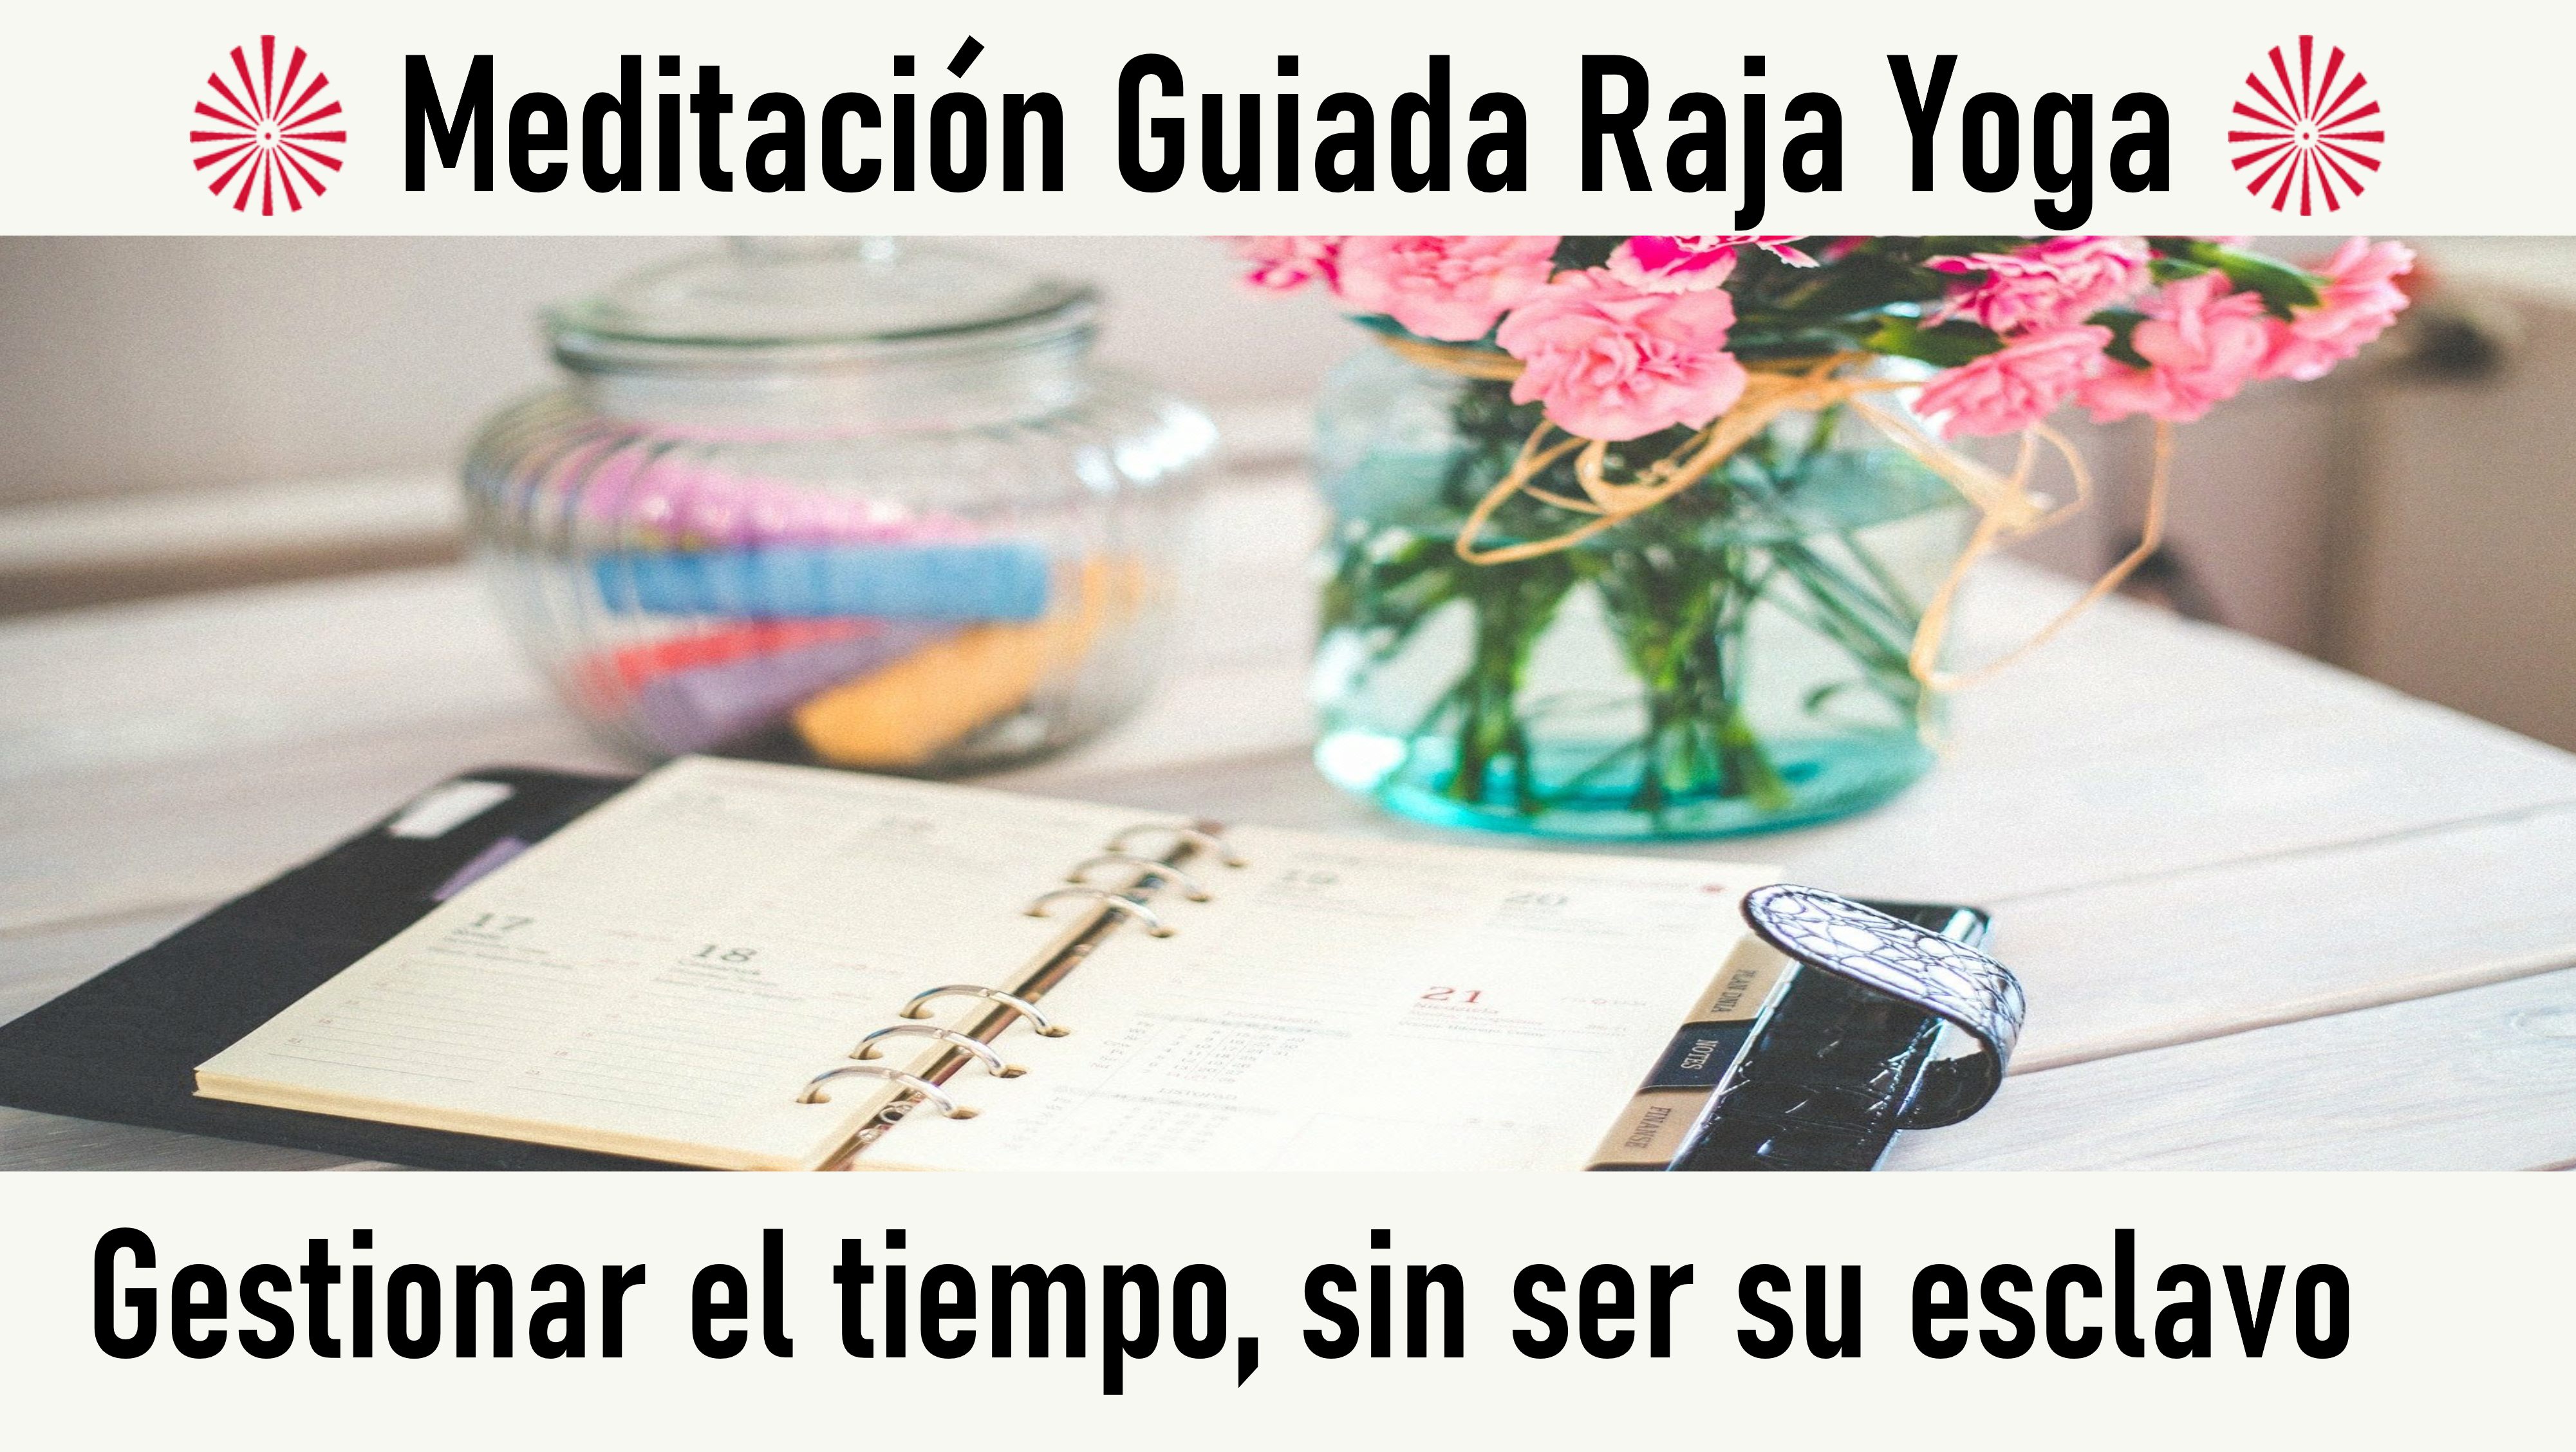 Meditación Raja Yoga: Gestionar el tiempo, sin ser su esclavo (21 Octubre 2020) On-line desde Sevilla